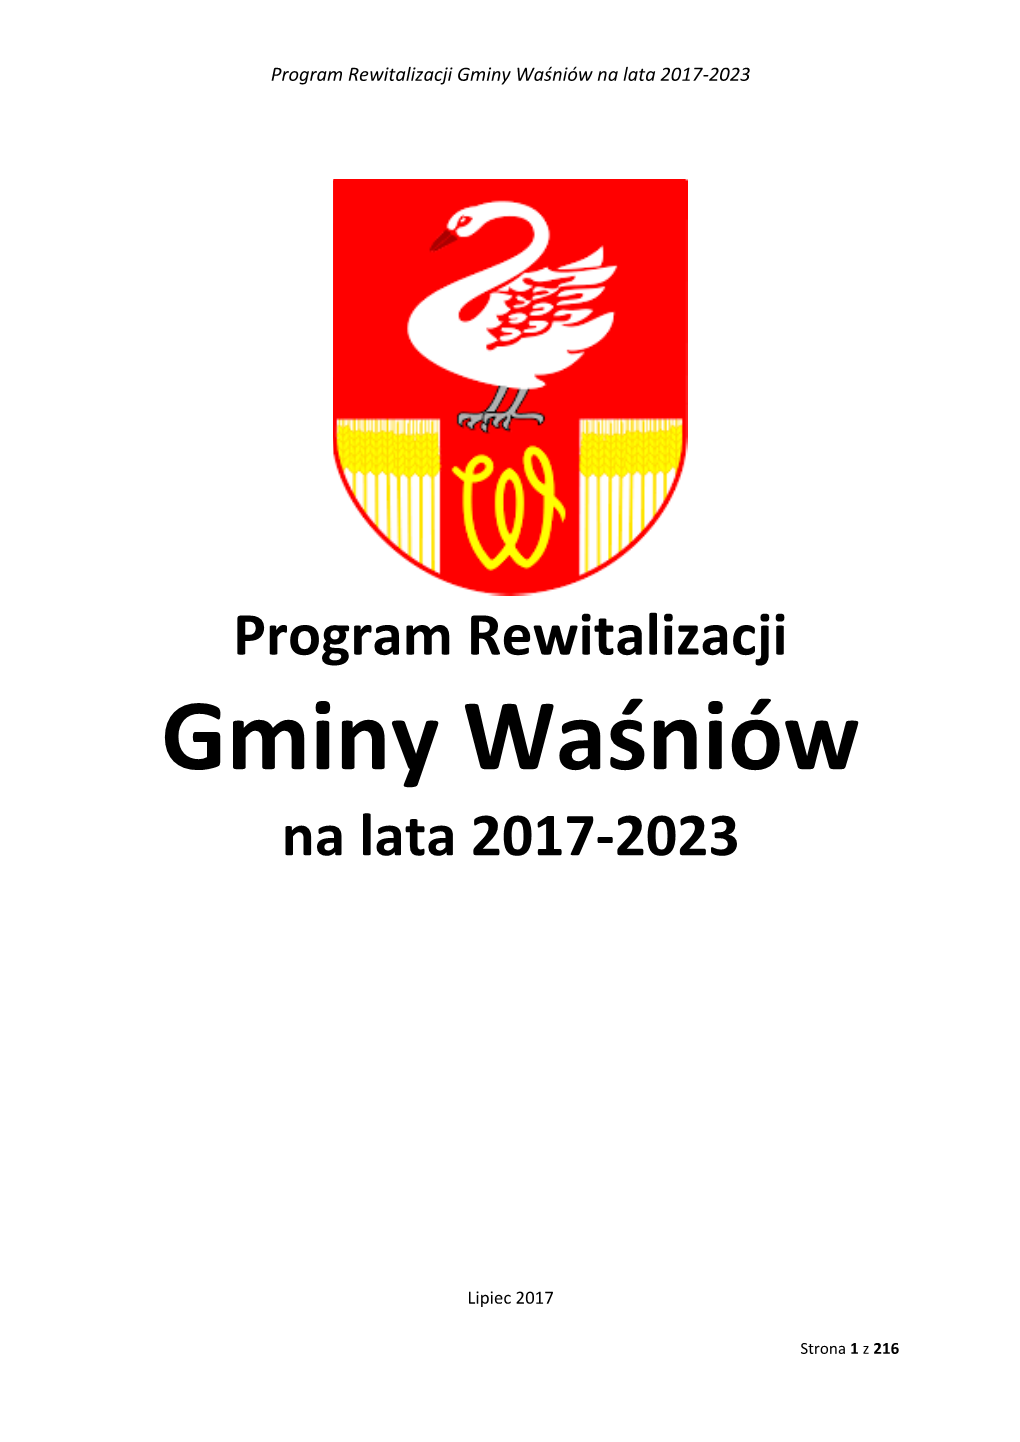 Gminy Waśniów Na Lata 2017-2023